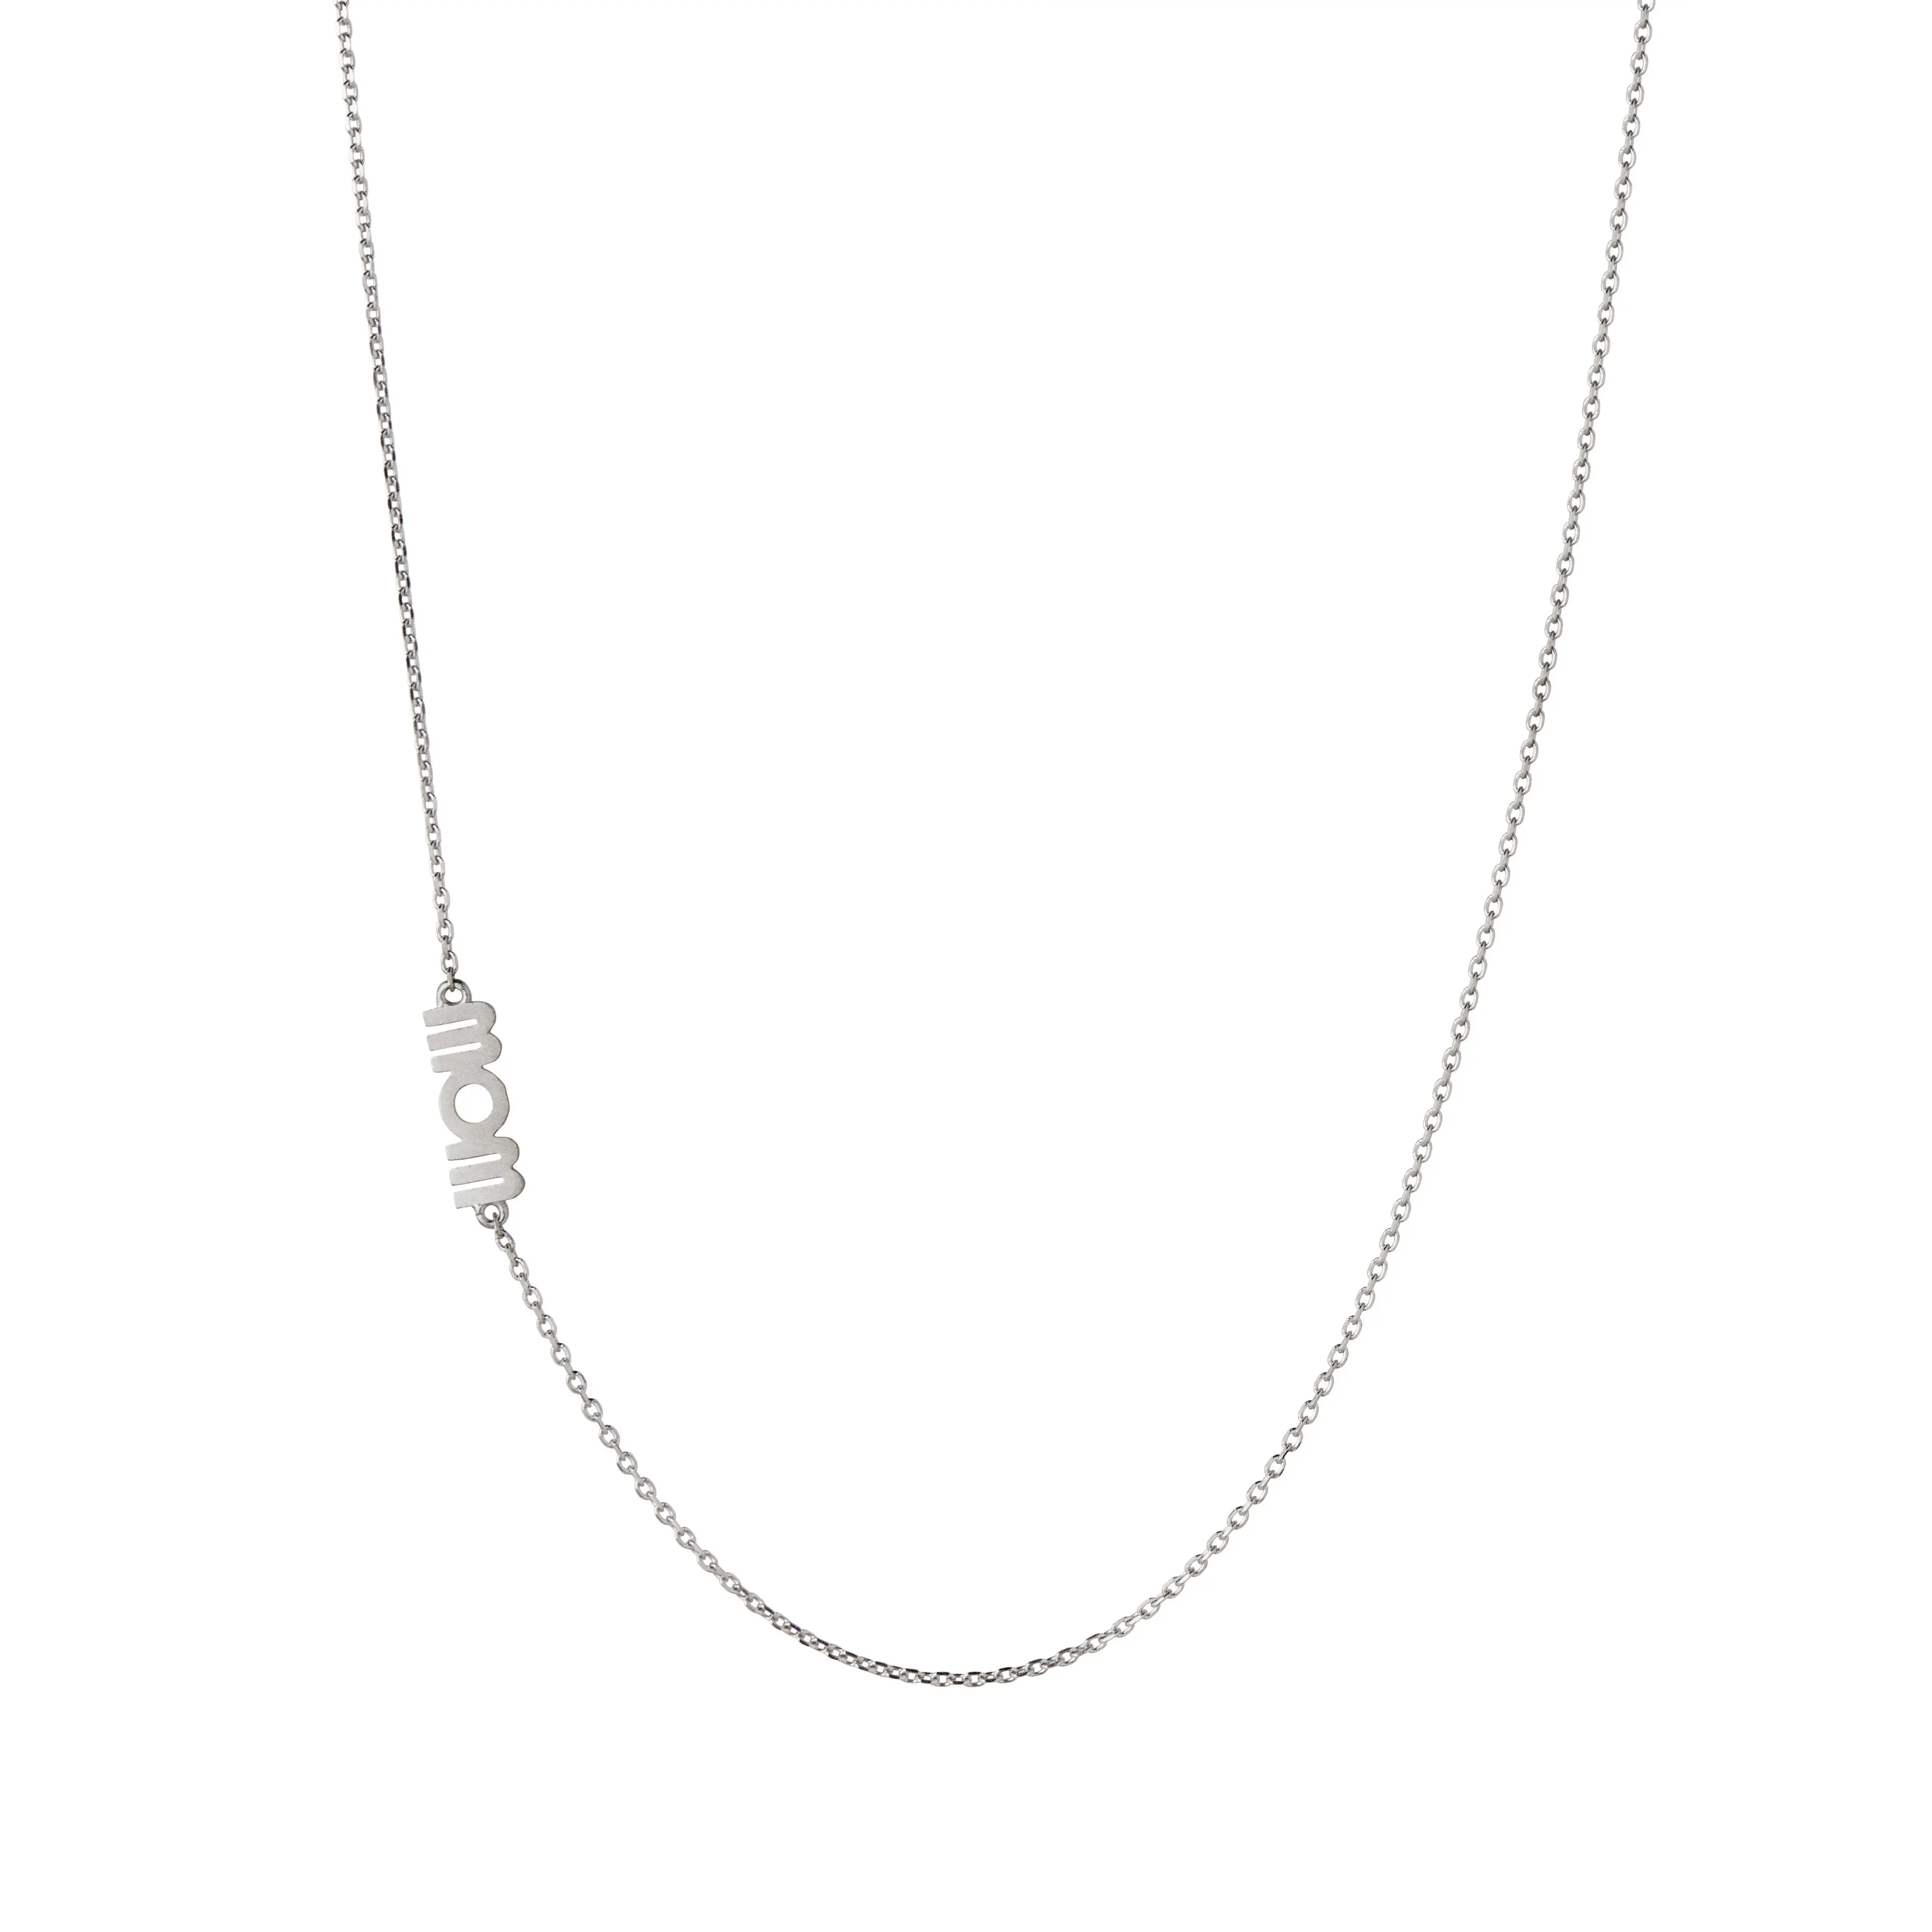 Wow/mom halskæde - Sølv fra Stine A Jewelry